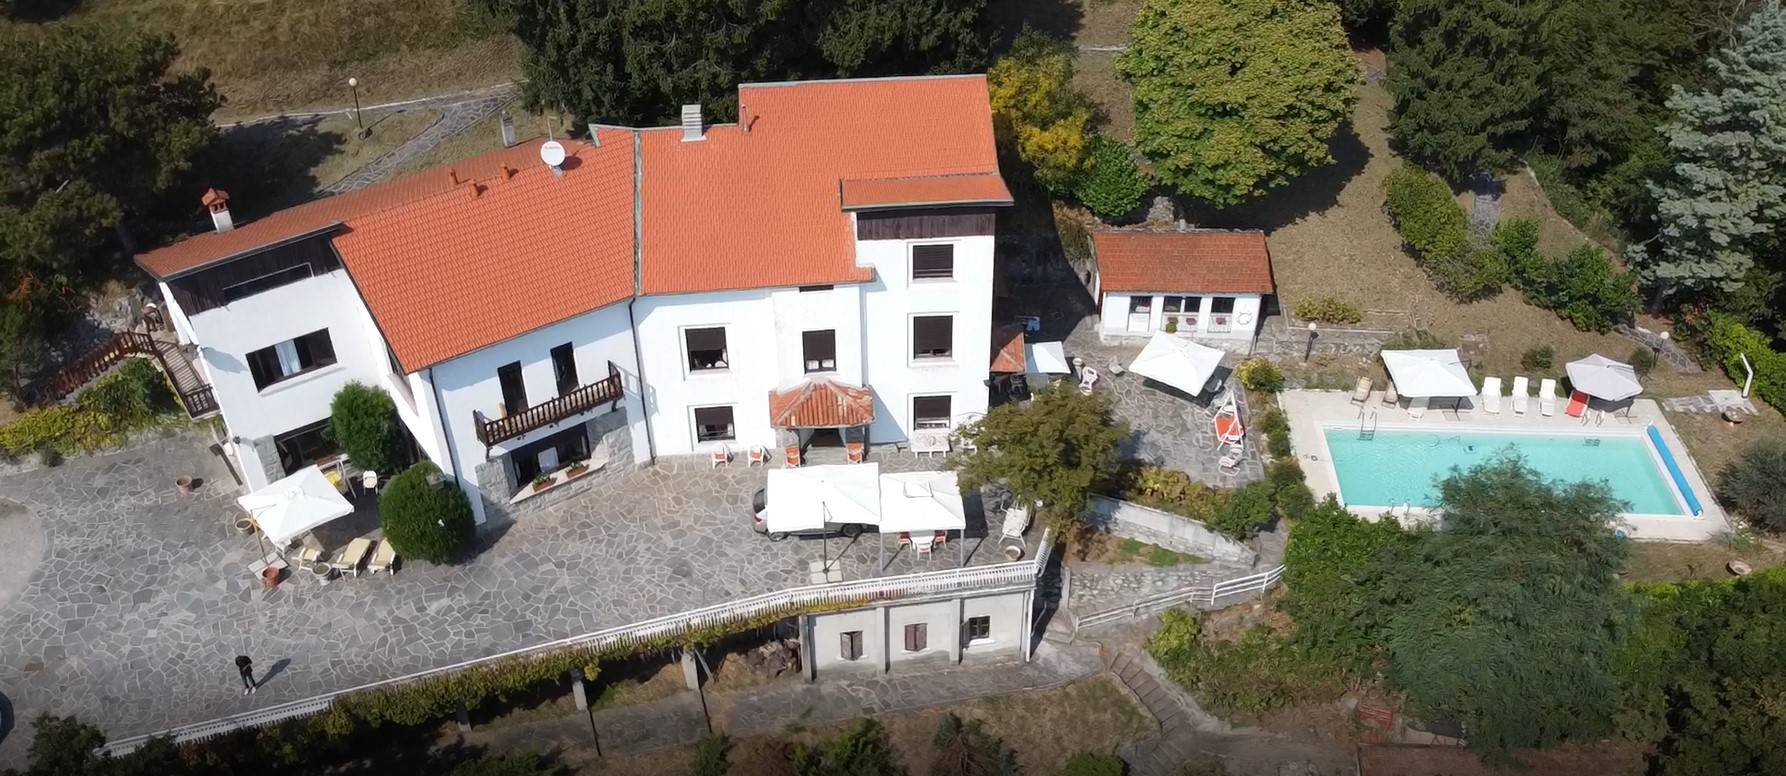 Villa in vendita a Eupilio, 14 locali, Trattative riservate | CambioCasa.it